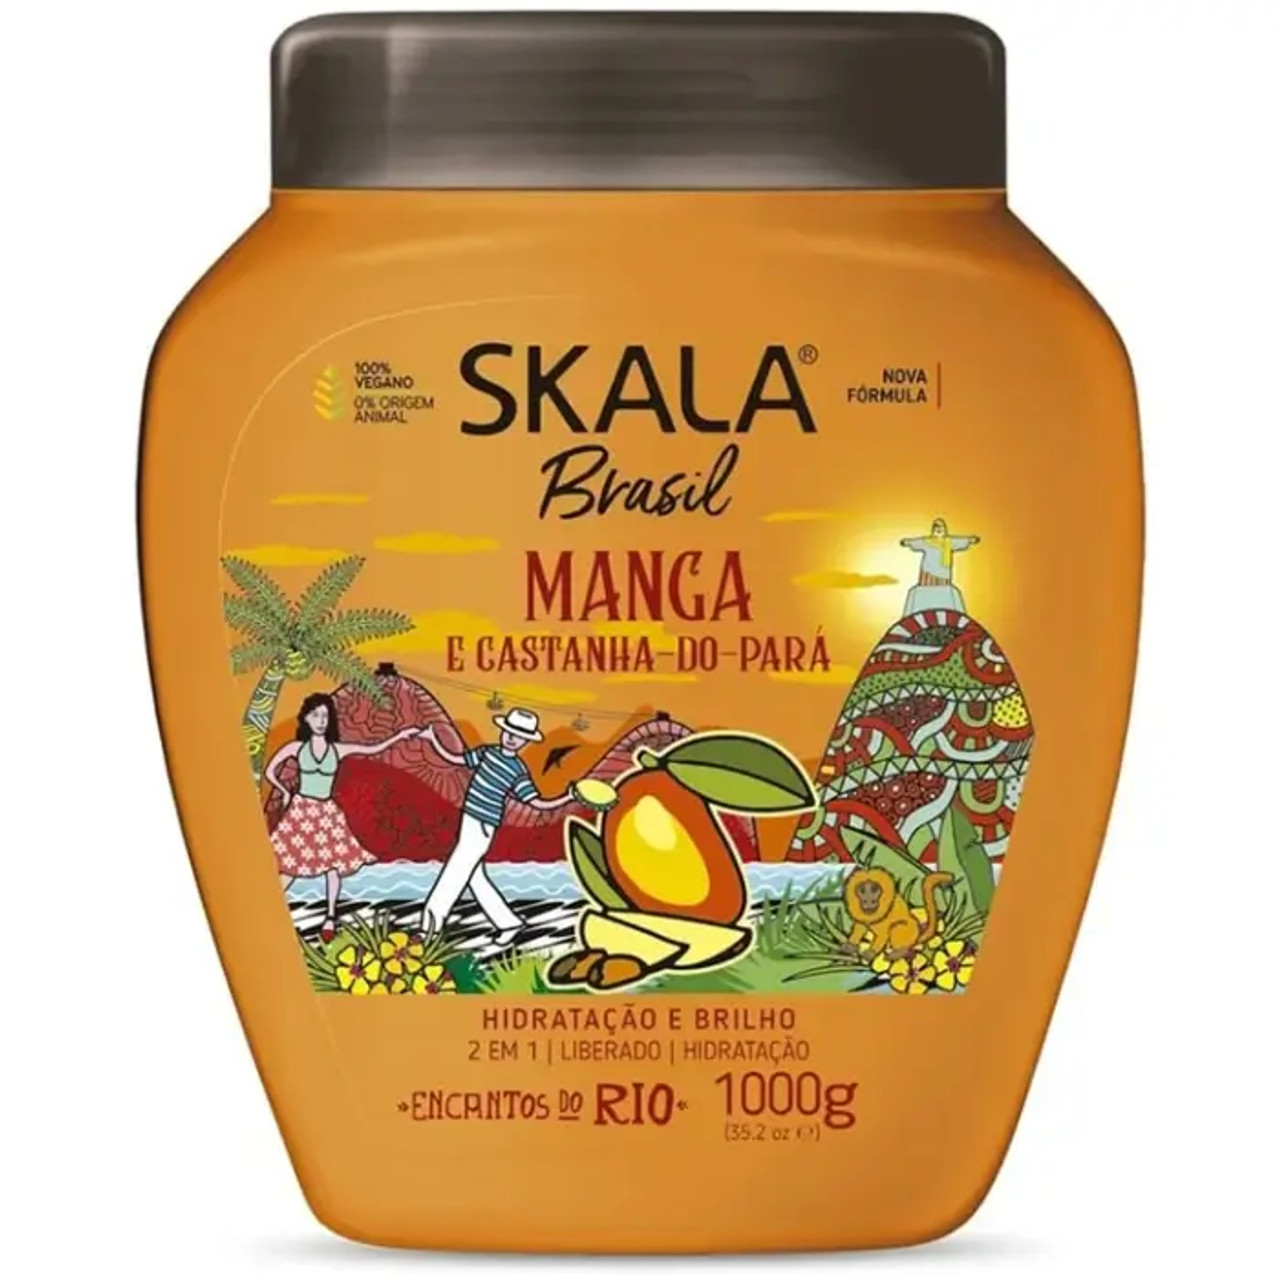 SKALA Mango & Brazilnut Hair Cream 6-CASE - 1000g Each | Nourishing Blend - Chicken Pieces